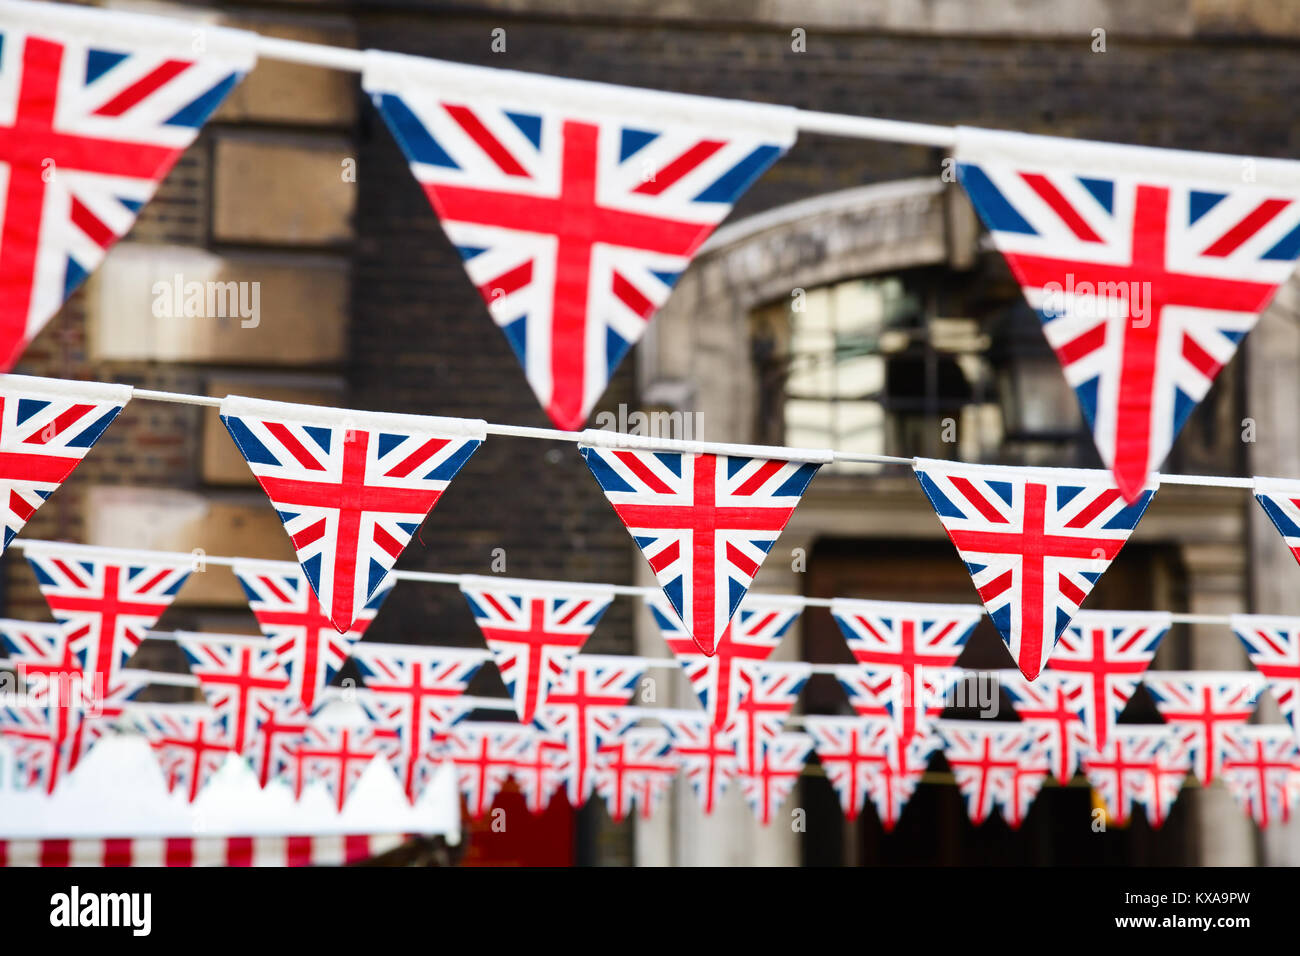 Union Jack Flagge Dreieckige Bunting Hangen In Eine Strasse Einen Festlichen Dekorationen In London England Grossbritannien Stockfotografie Alamy